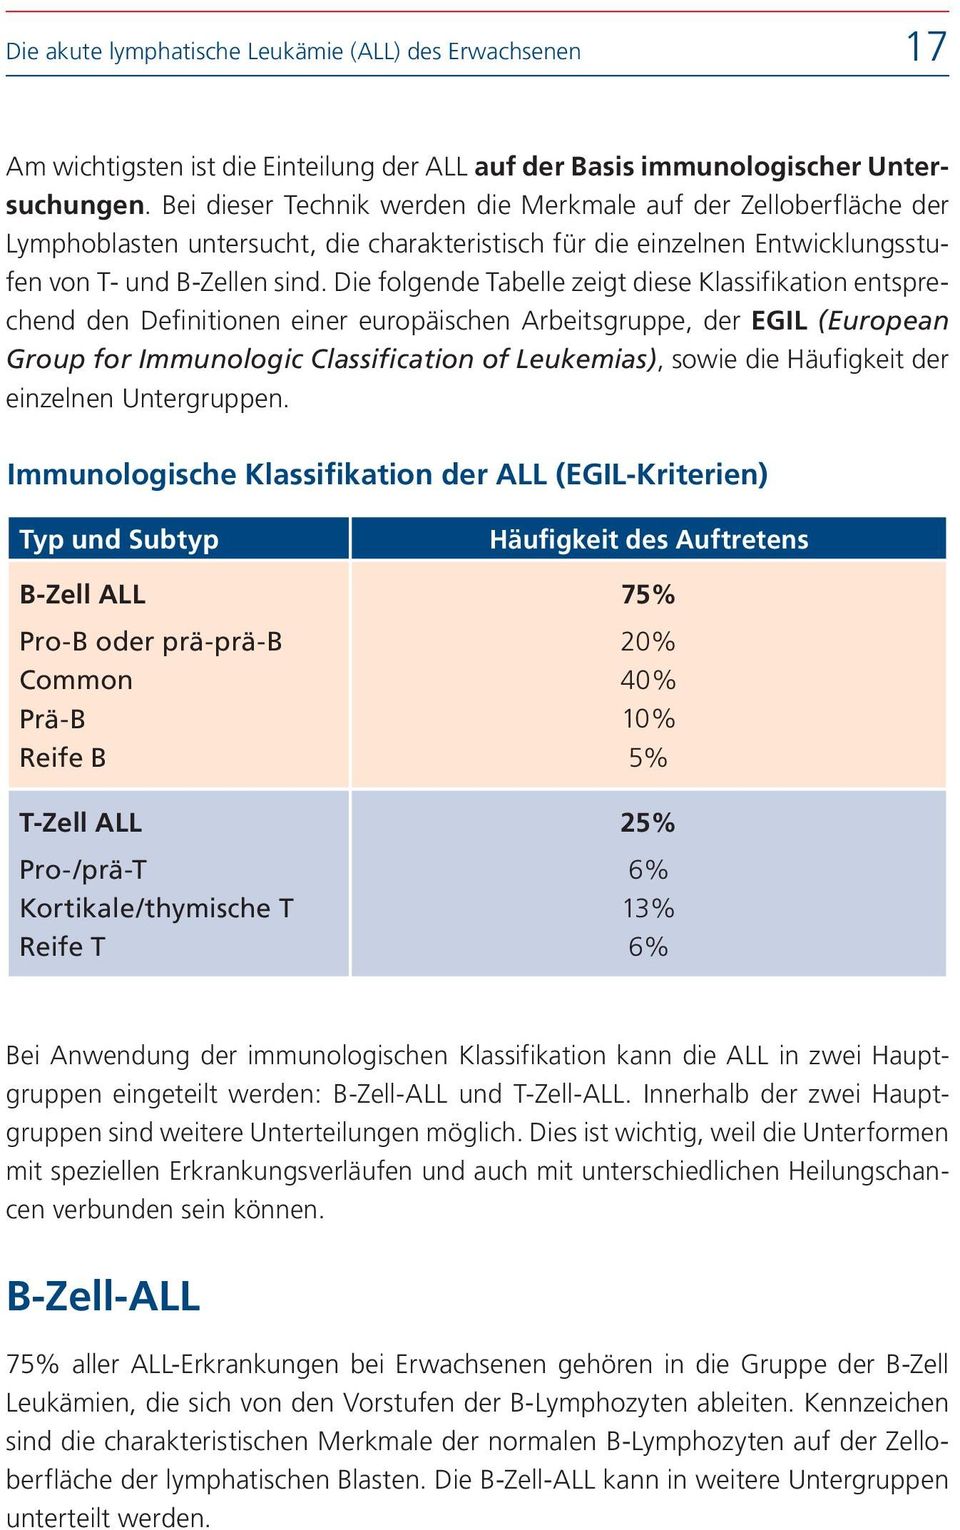 Die folgende Tabelle zeigt diese Klassifikation entsprechend den Definitionen einer europäischen Arbeitsgruppe, der EGIL (European Group for Immunologic Classification of Leukemias), sowie die